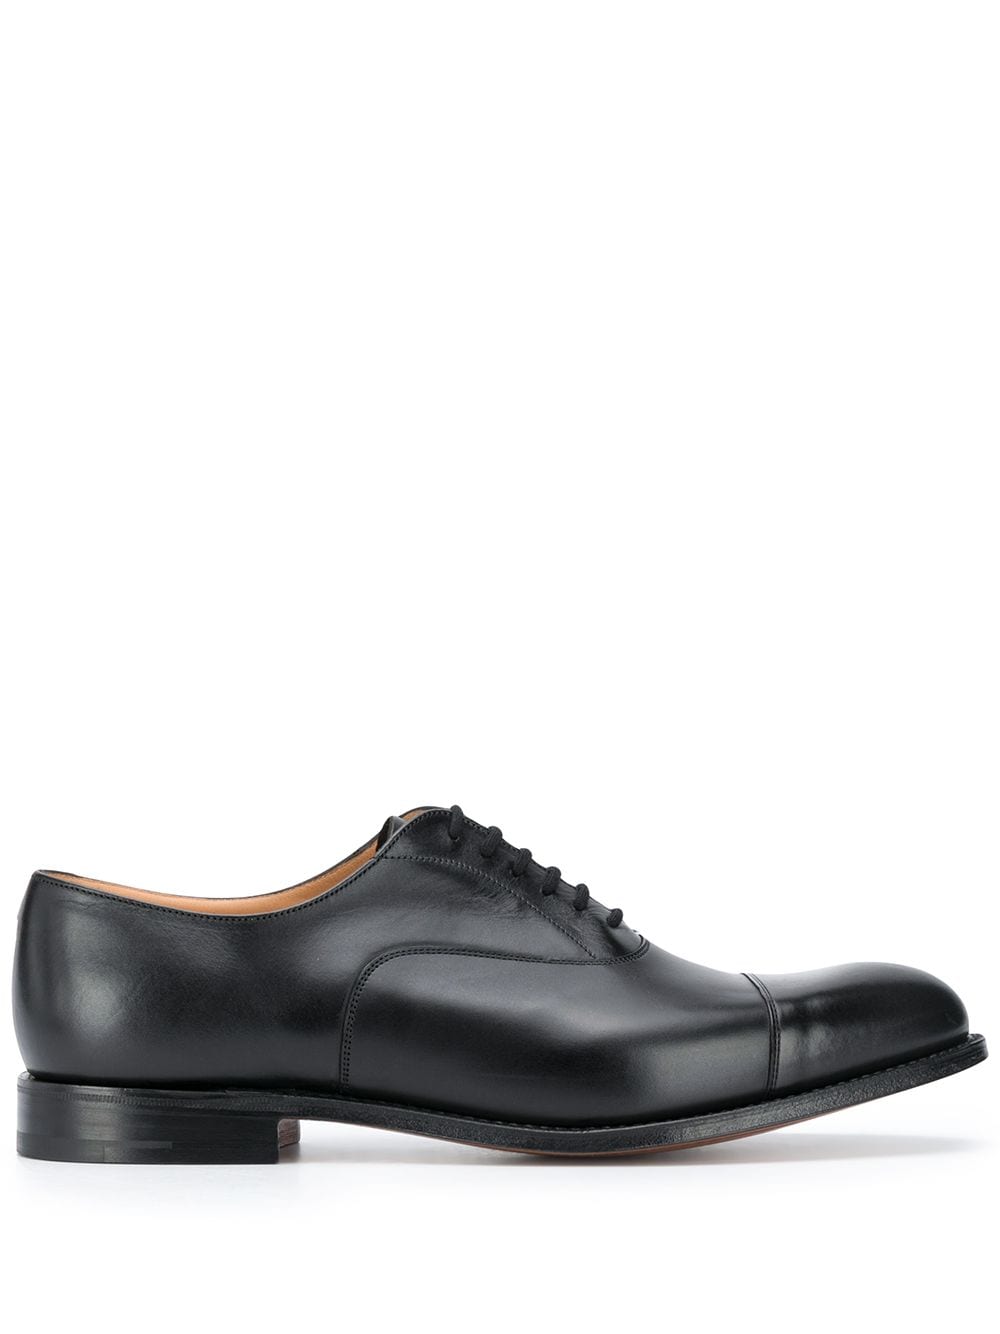 Church's Dubai Oxford shoes - Black von Church's